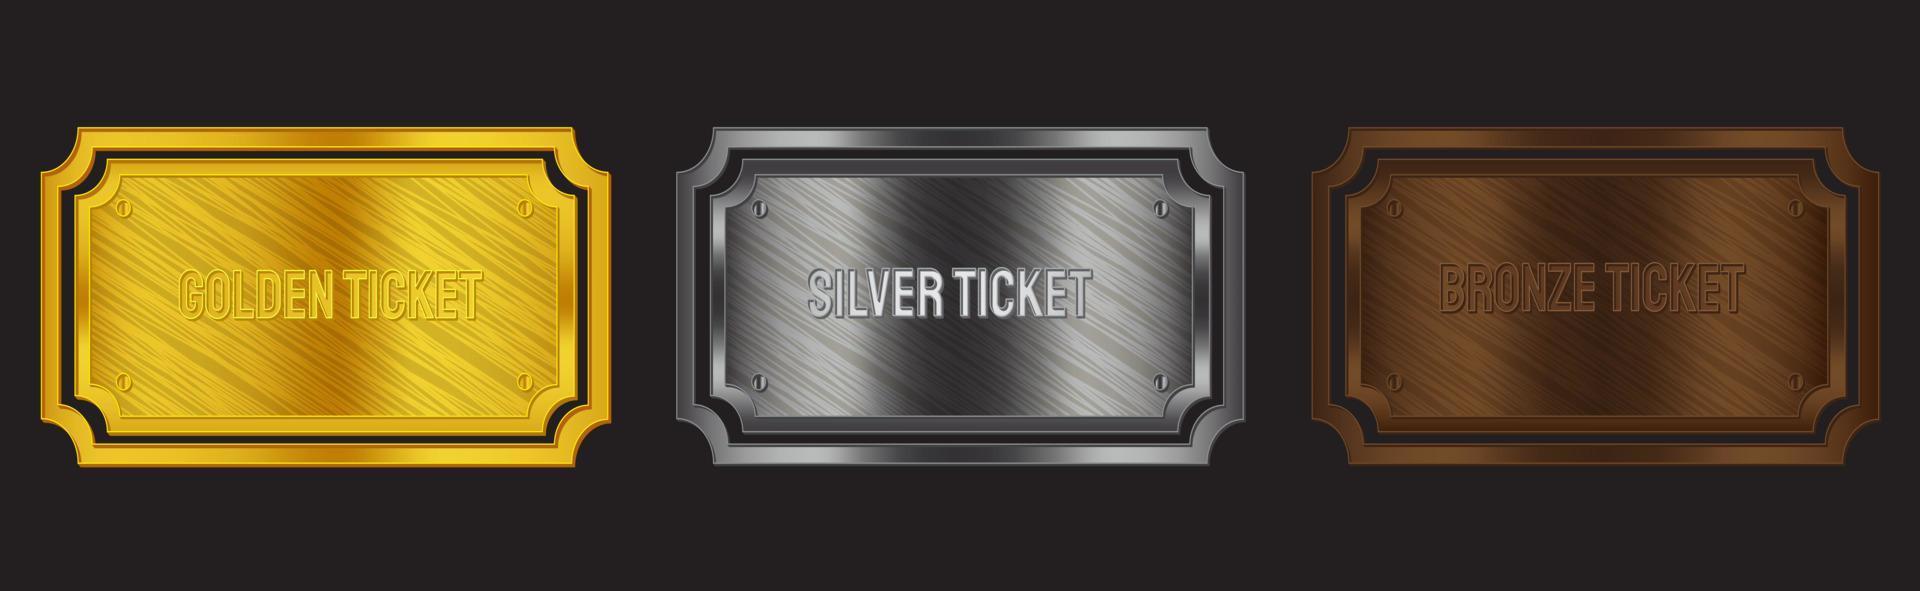 Abzeichen-Sets. Farben Gold, Silber, Bronze. für Tickets, Coupons, Prämien und Mitgliedskarten. vektor